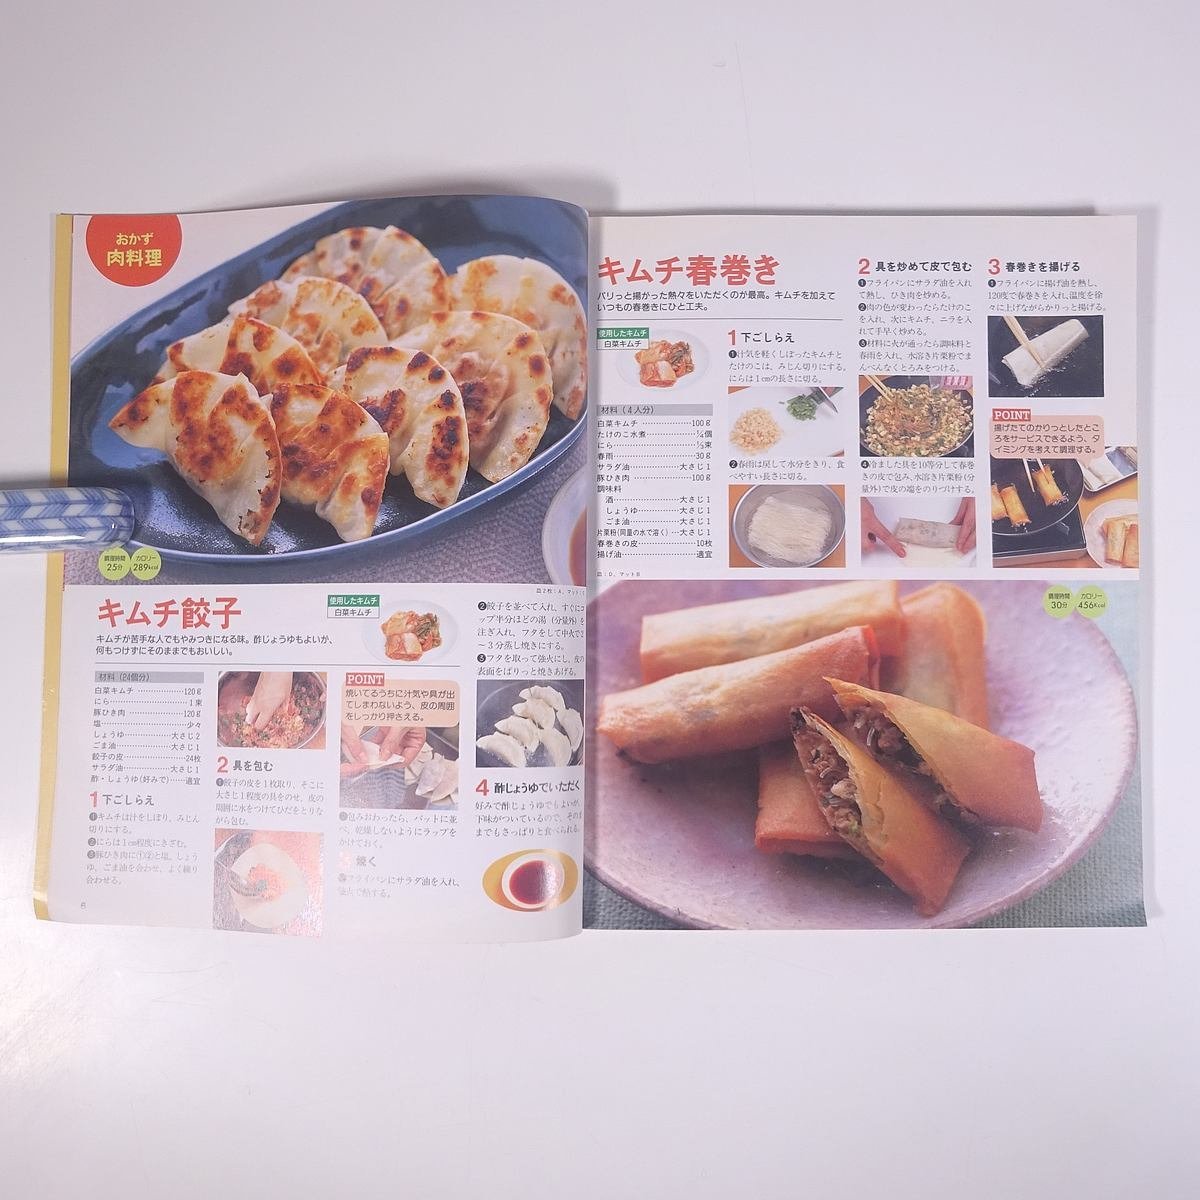 キムチ料理 キムチを使ってアイデア・クッキング レディブティックシリーズ ブティック社 1999 大型本 料理 献立 レシピ 家庭料理_画像7